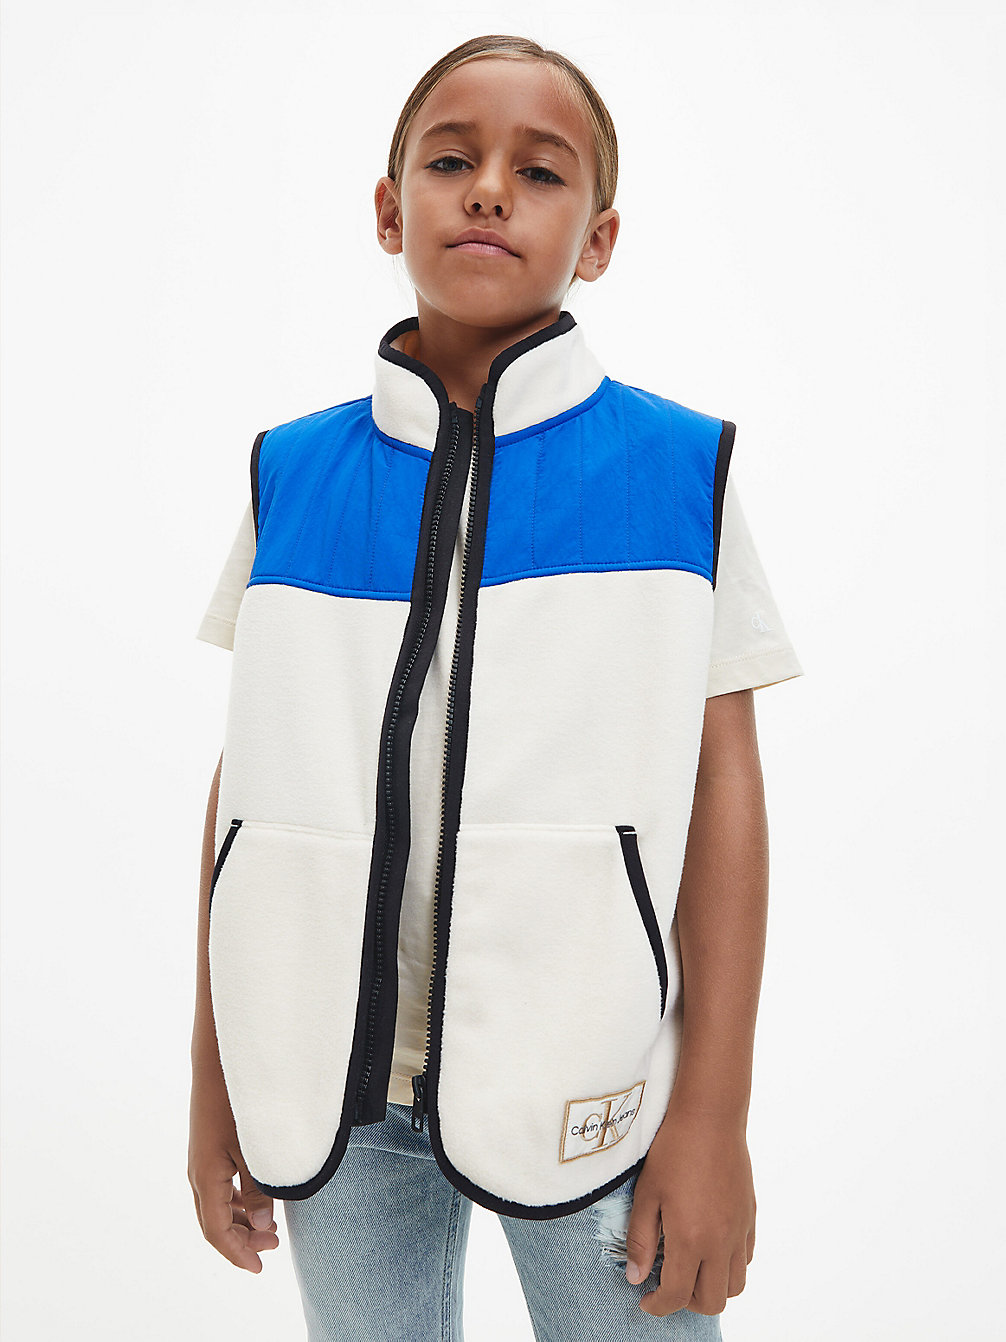 MUSLIN > Флисовый жилет на молнии с цветными блоками > undefined boys - Calvin Klein